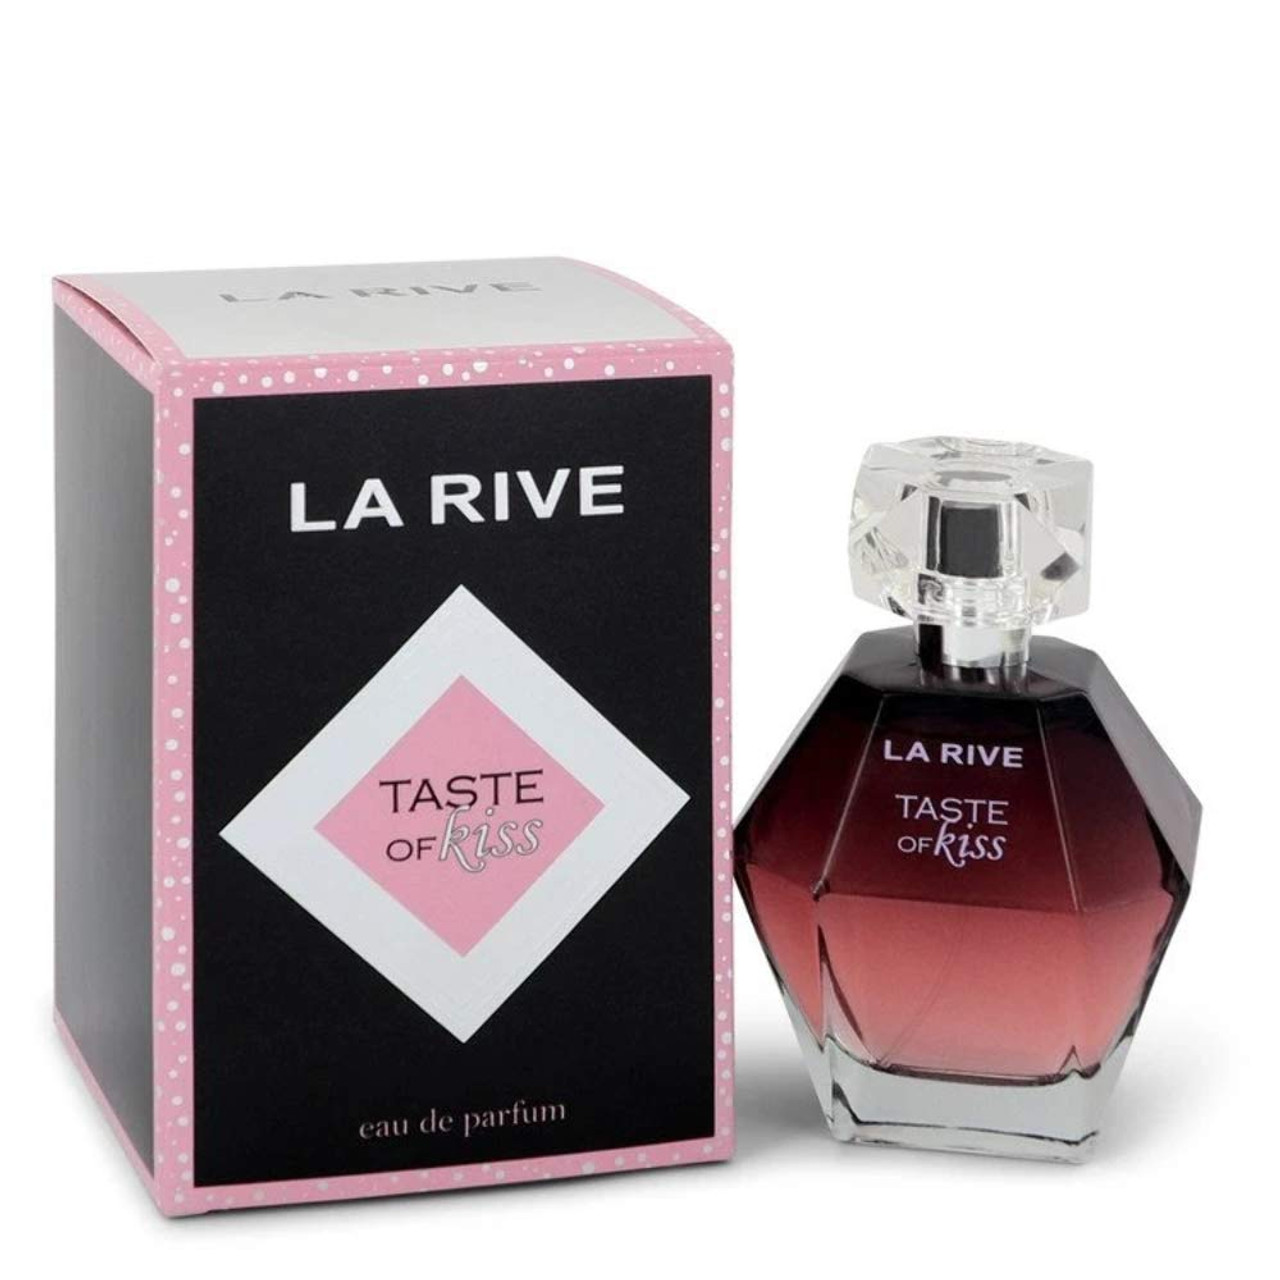 La Rive Touch Of Women Eau De Parfum Spray 3 Oz (90 Ml) for Women